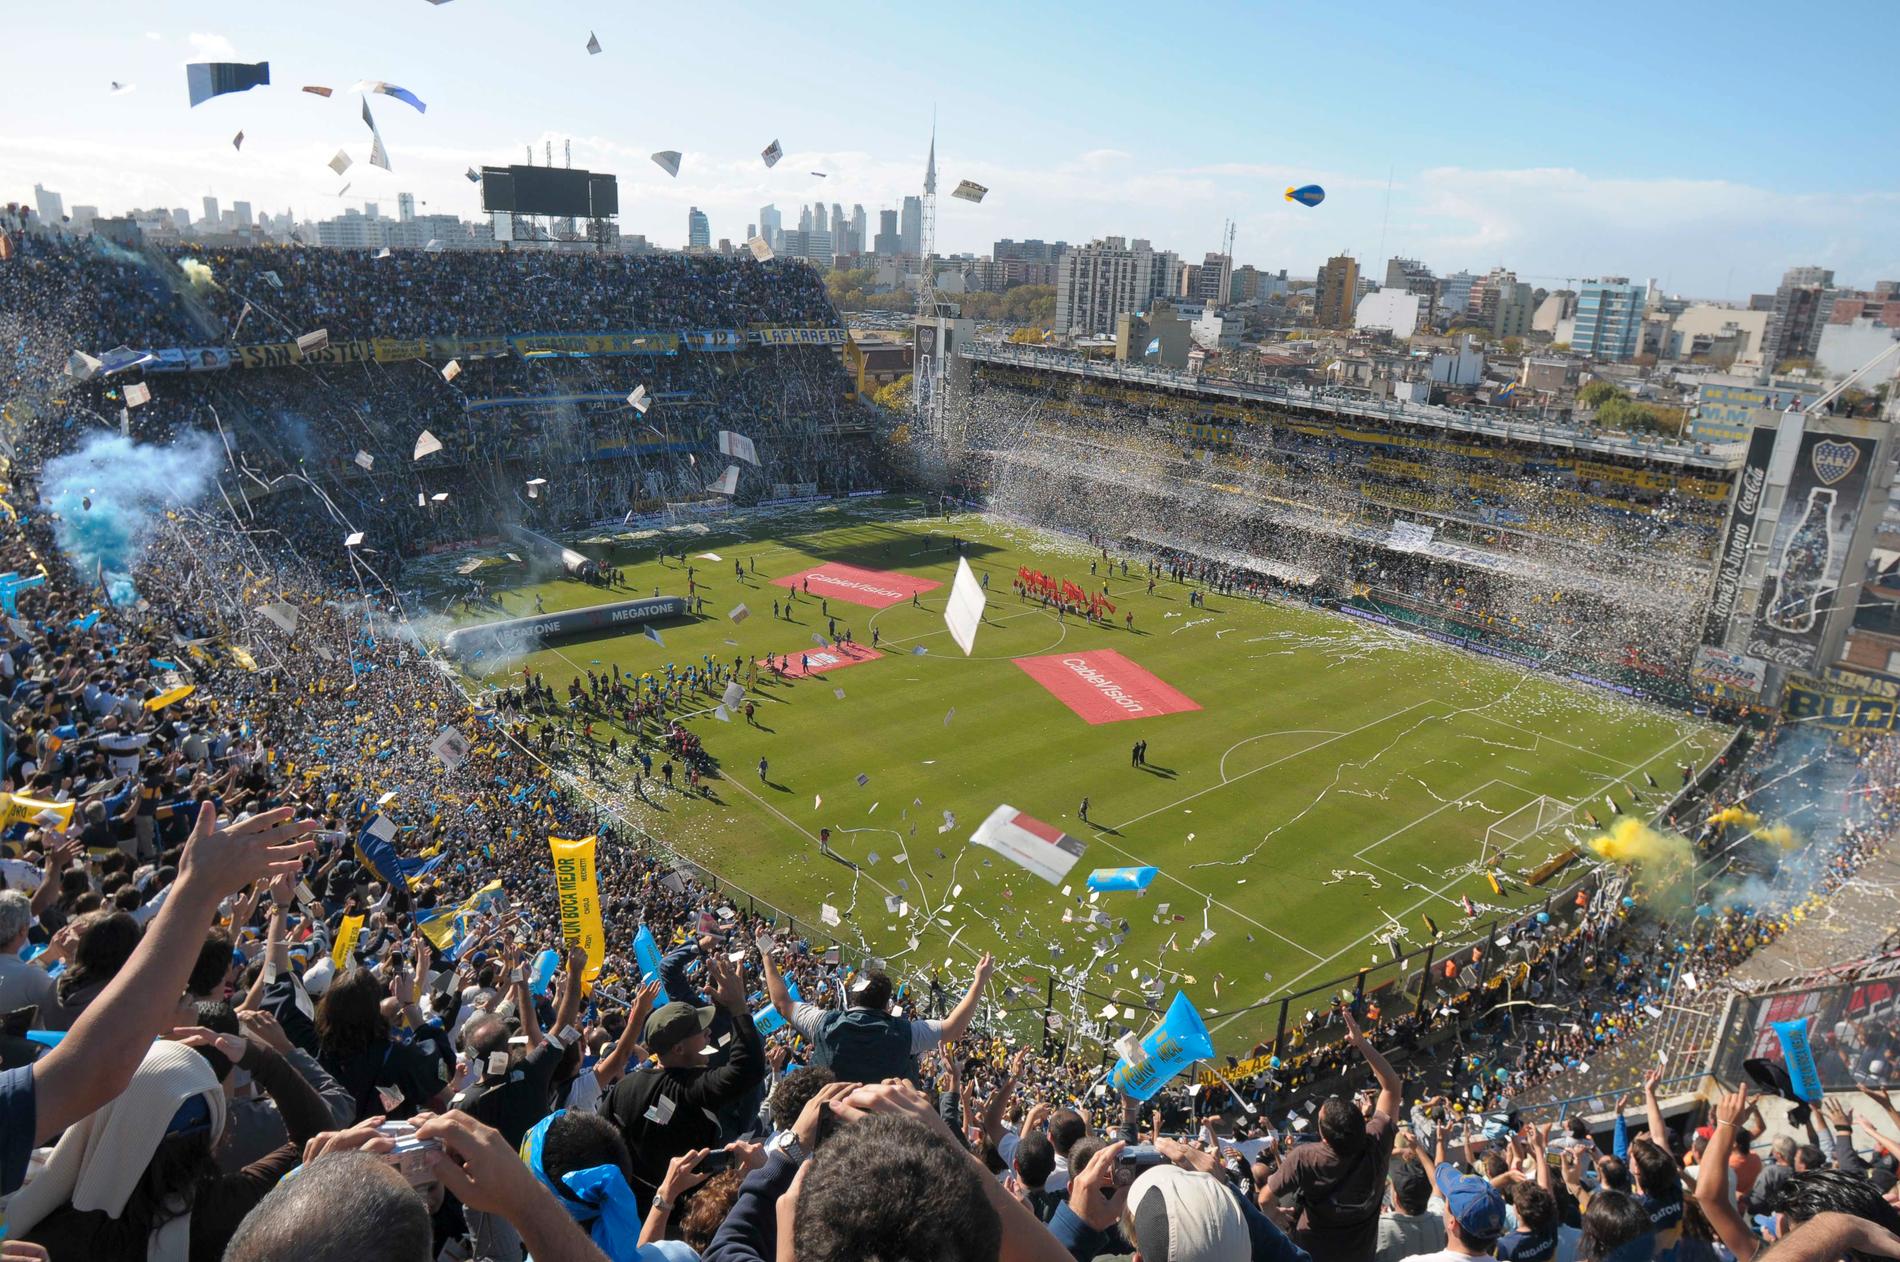 ”La Bombonera” är en av världens mest kända fotbollsarenor. Den ligger i Buenos Aires, Argentina.